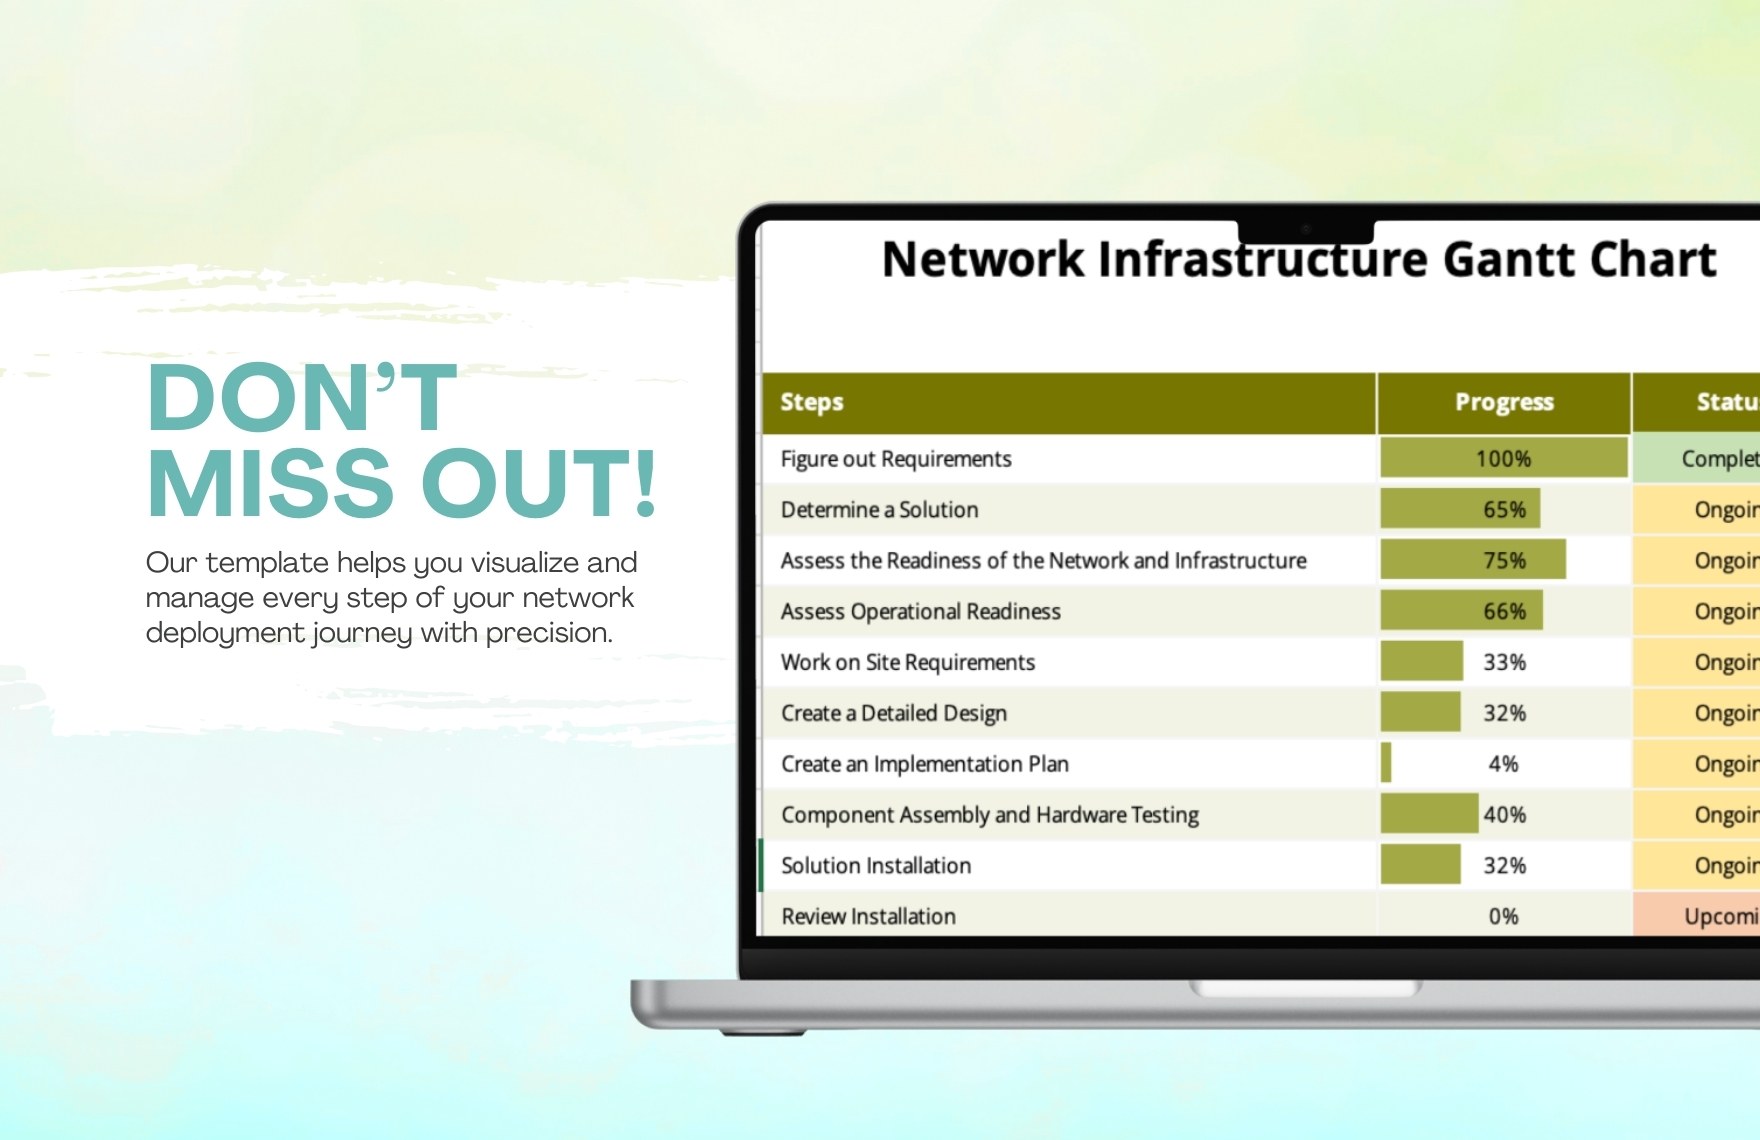 Network Infrastructure Gantt Chart Template